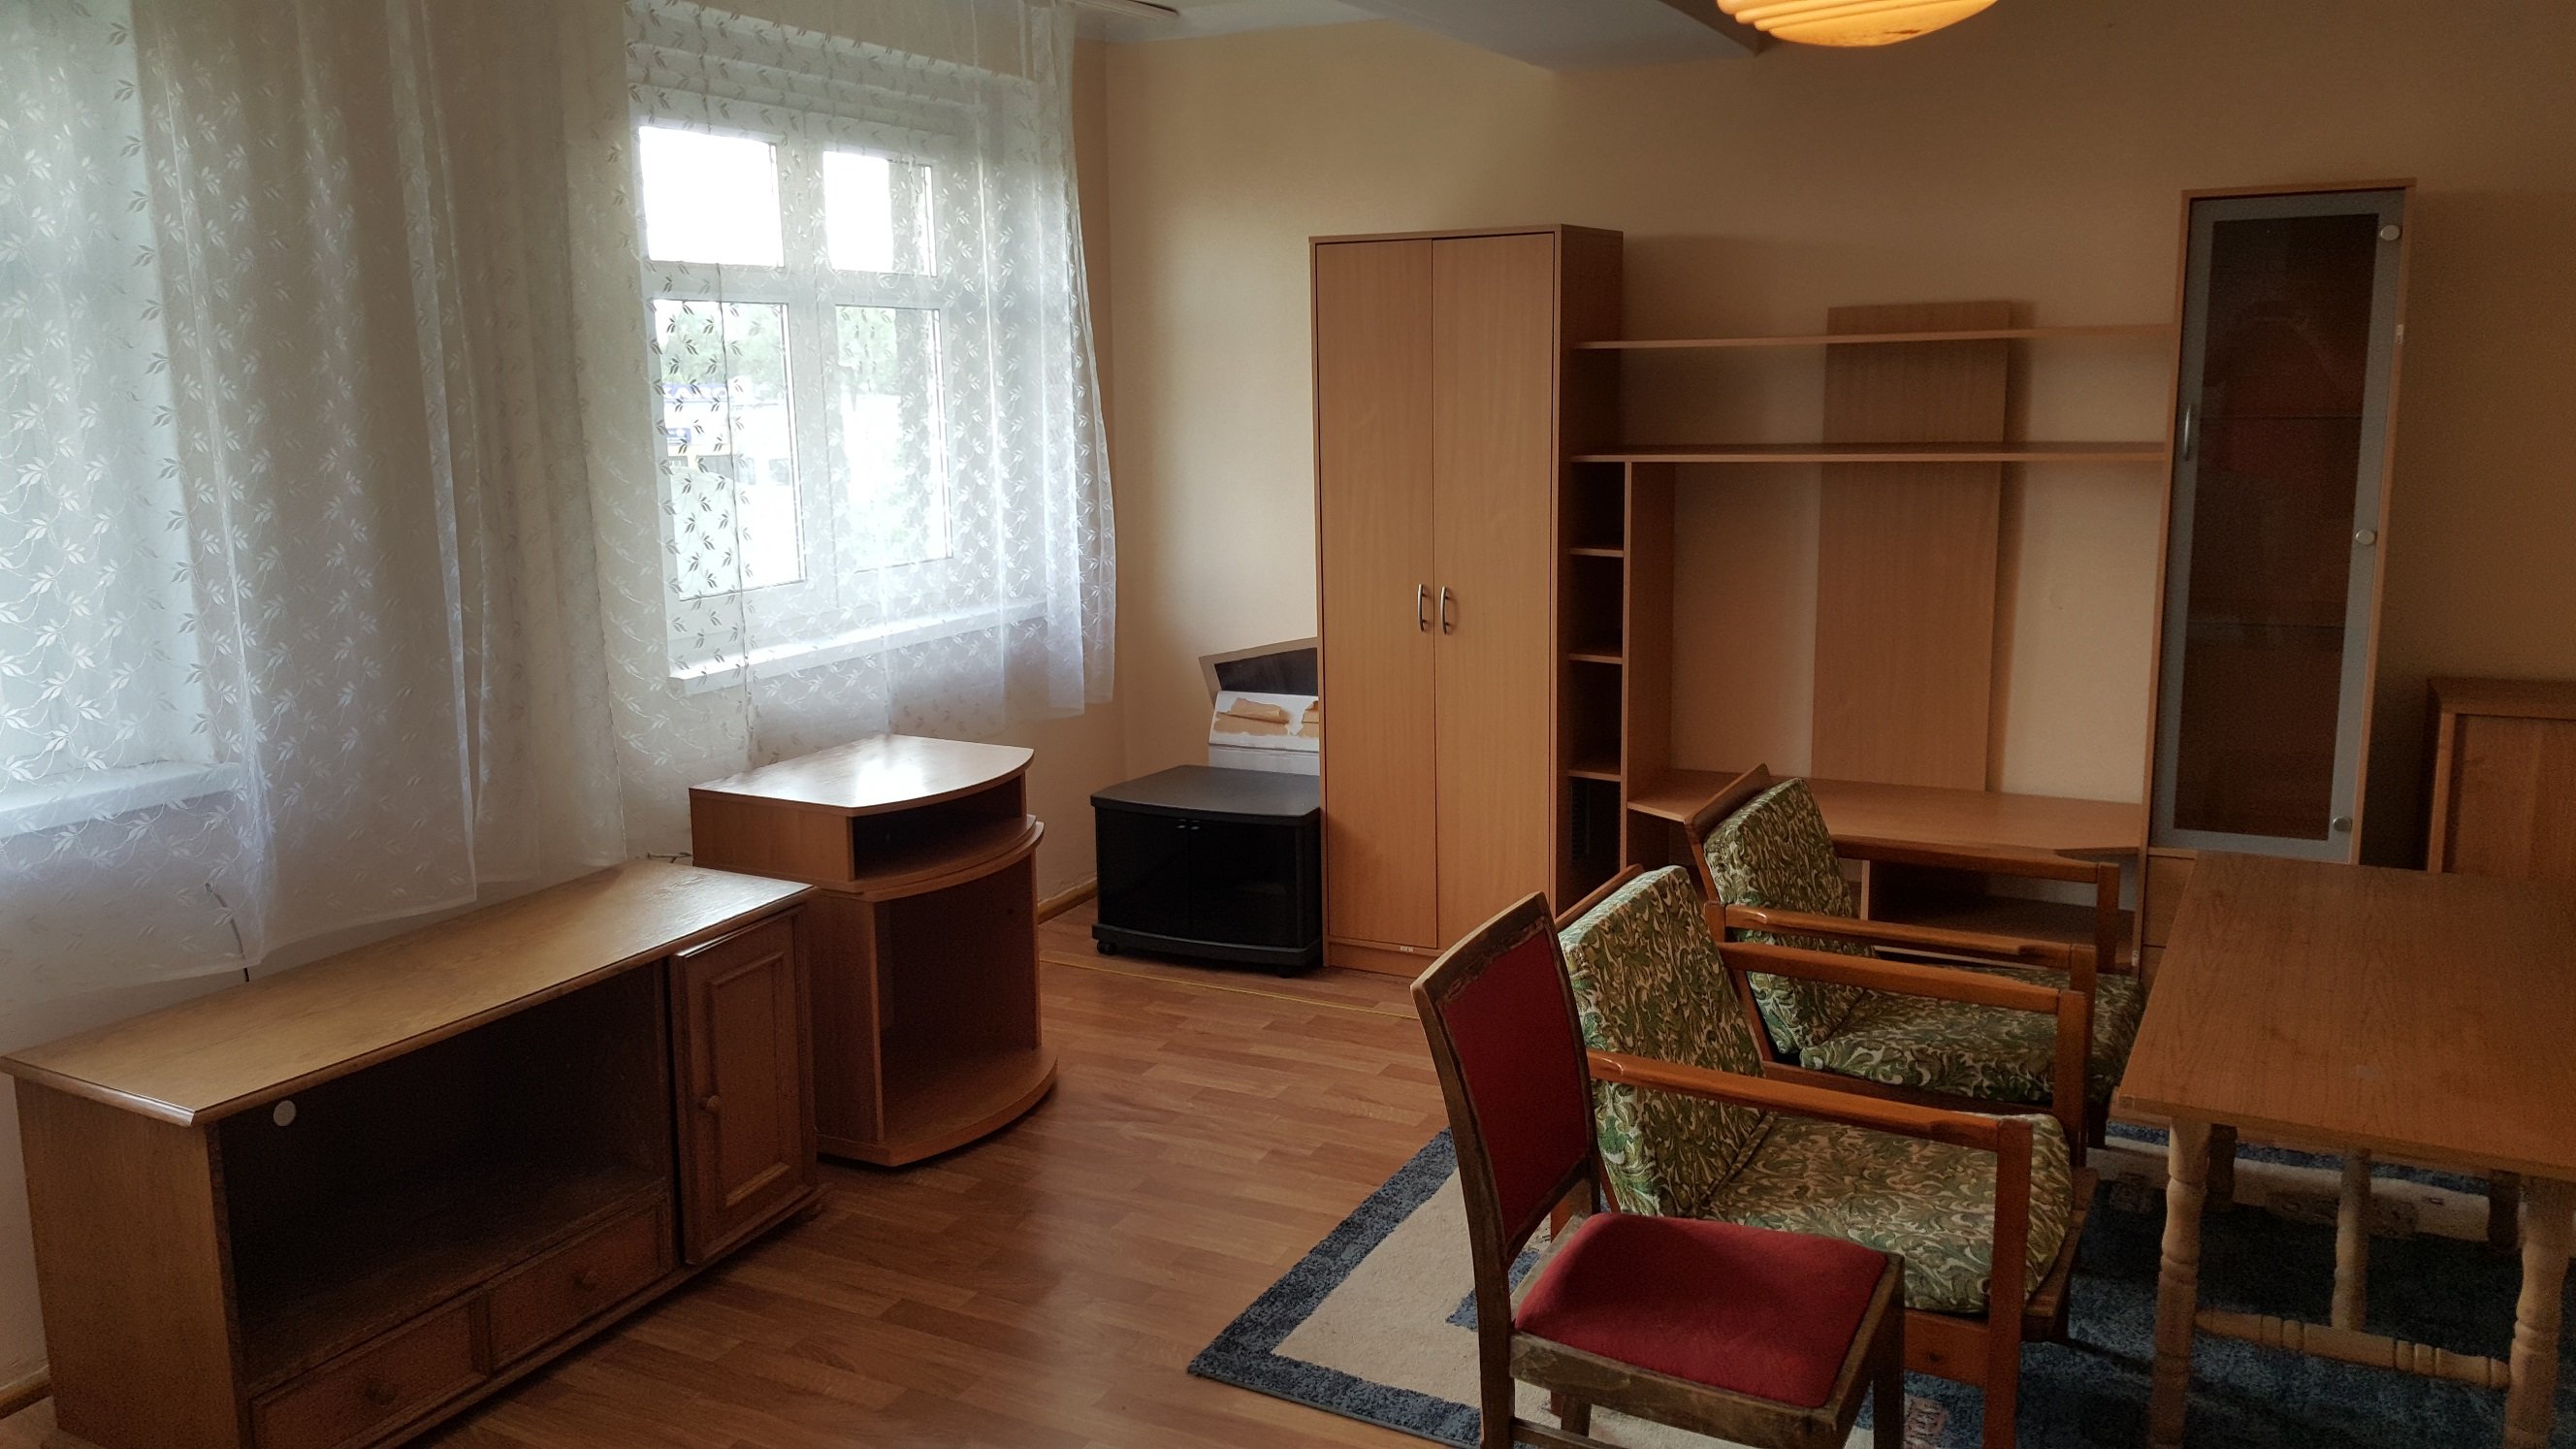 Mieszkanie do wynajęcia - 3 pokoje, Opole, Zaodrze,1300 zł + opłaty